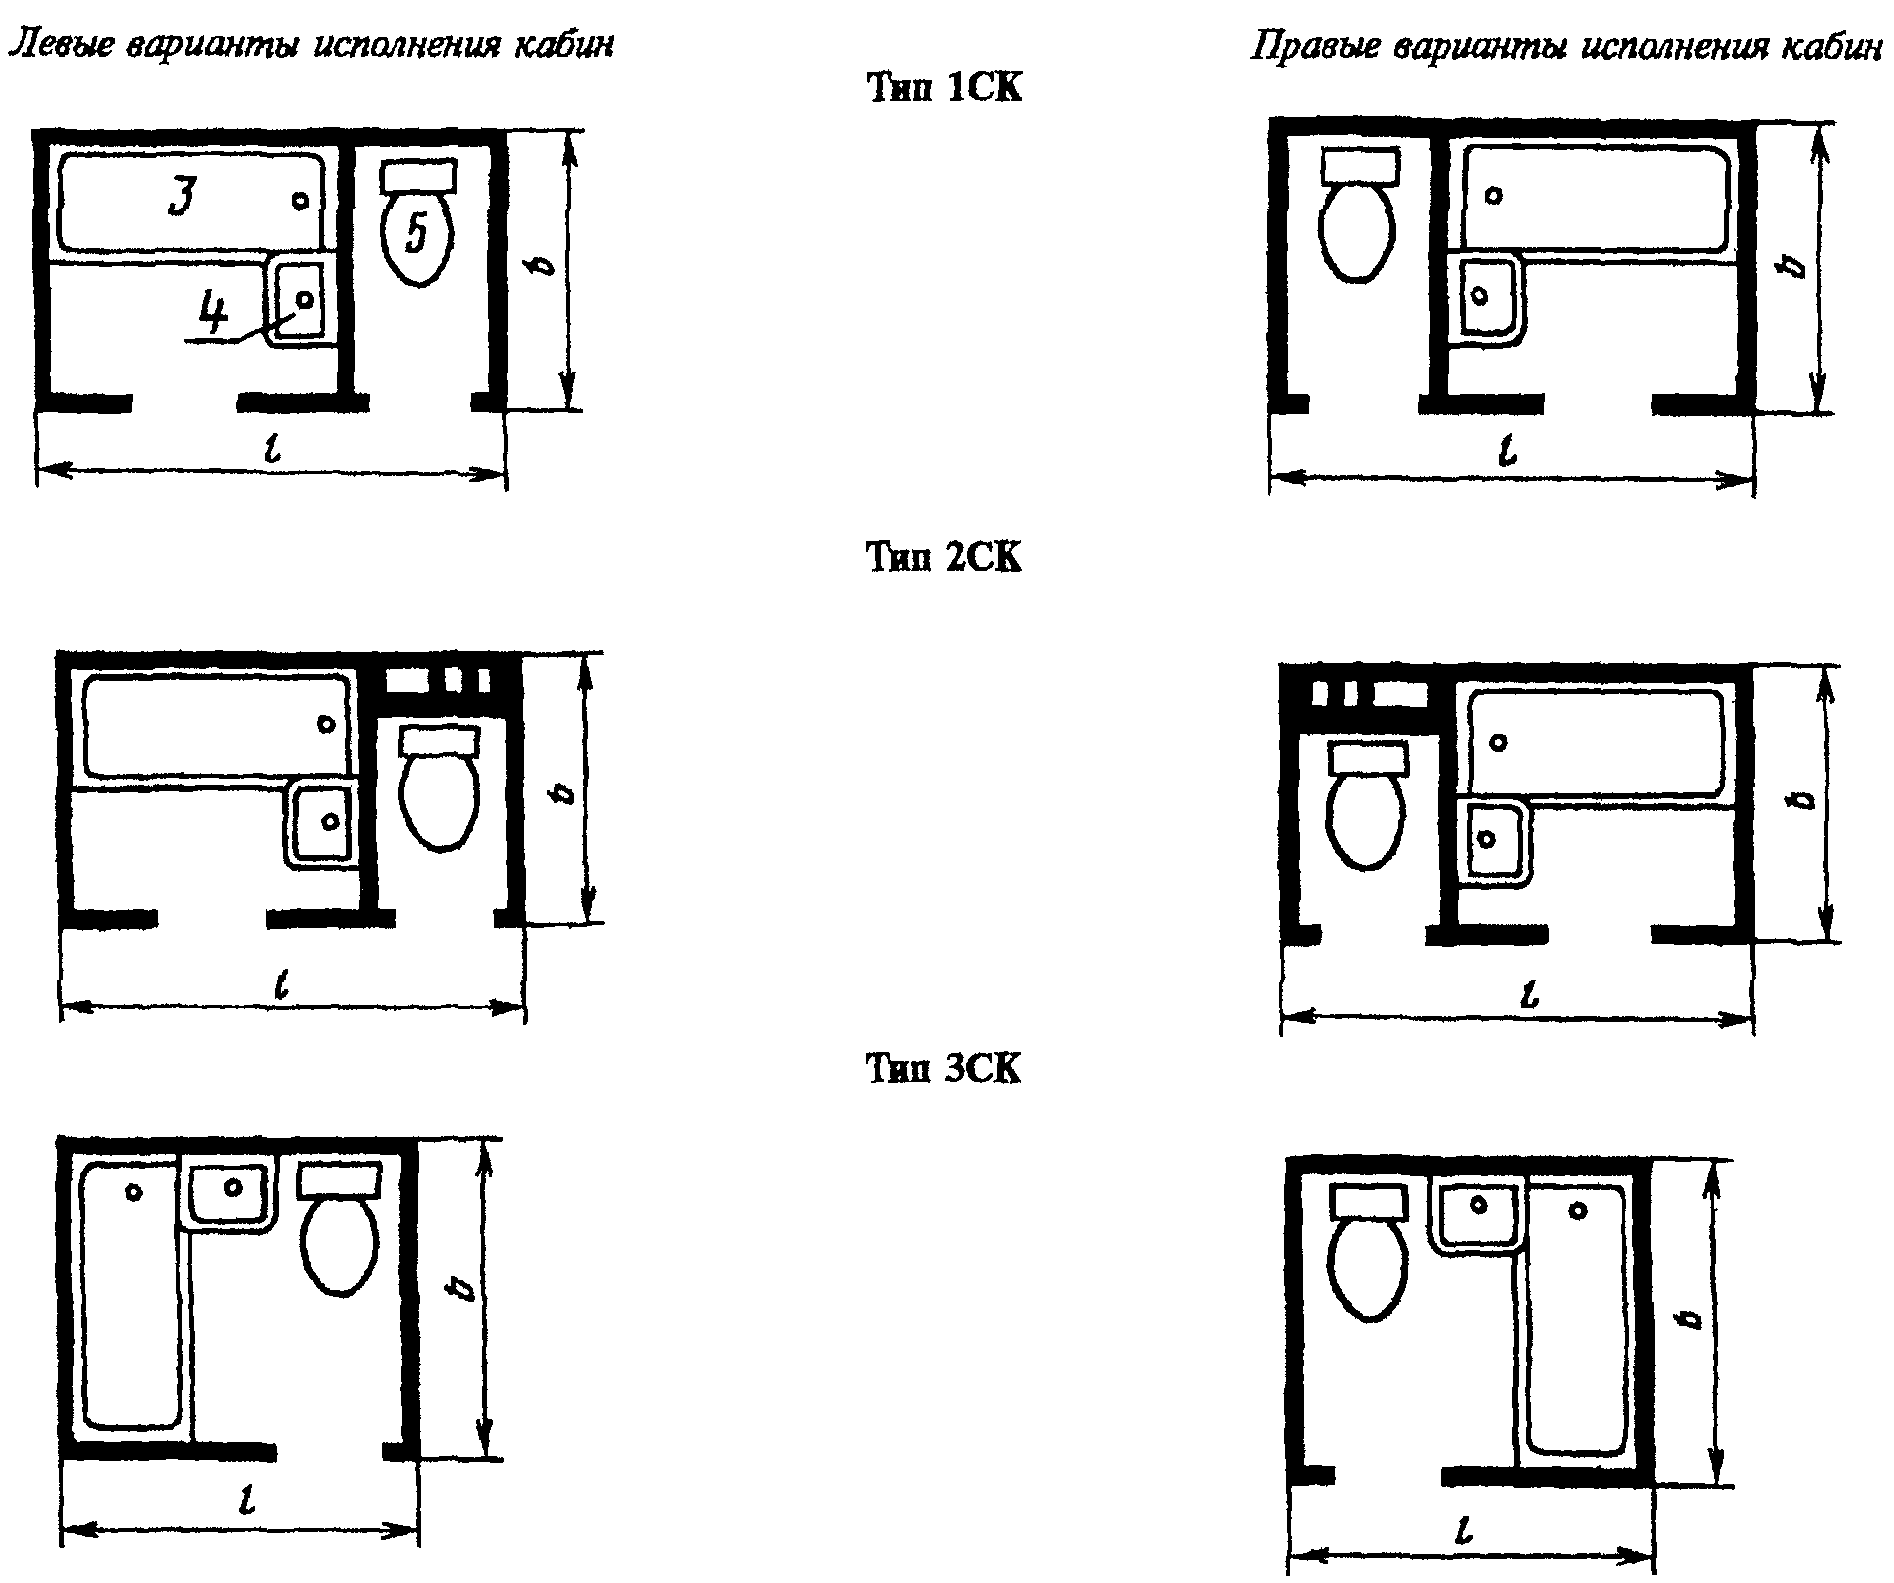 Размер стандартной ванны комнаты